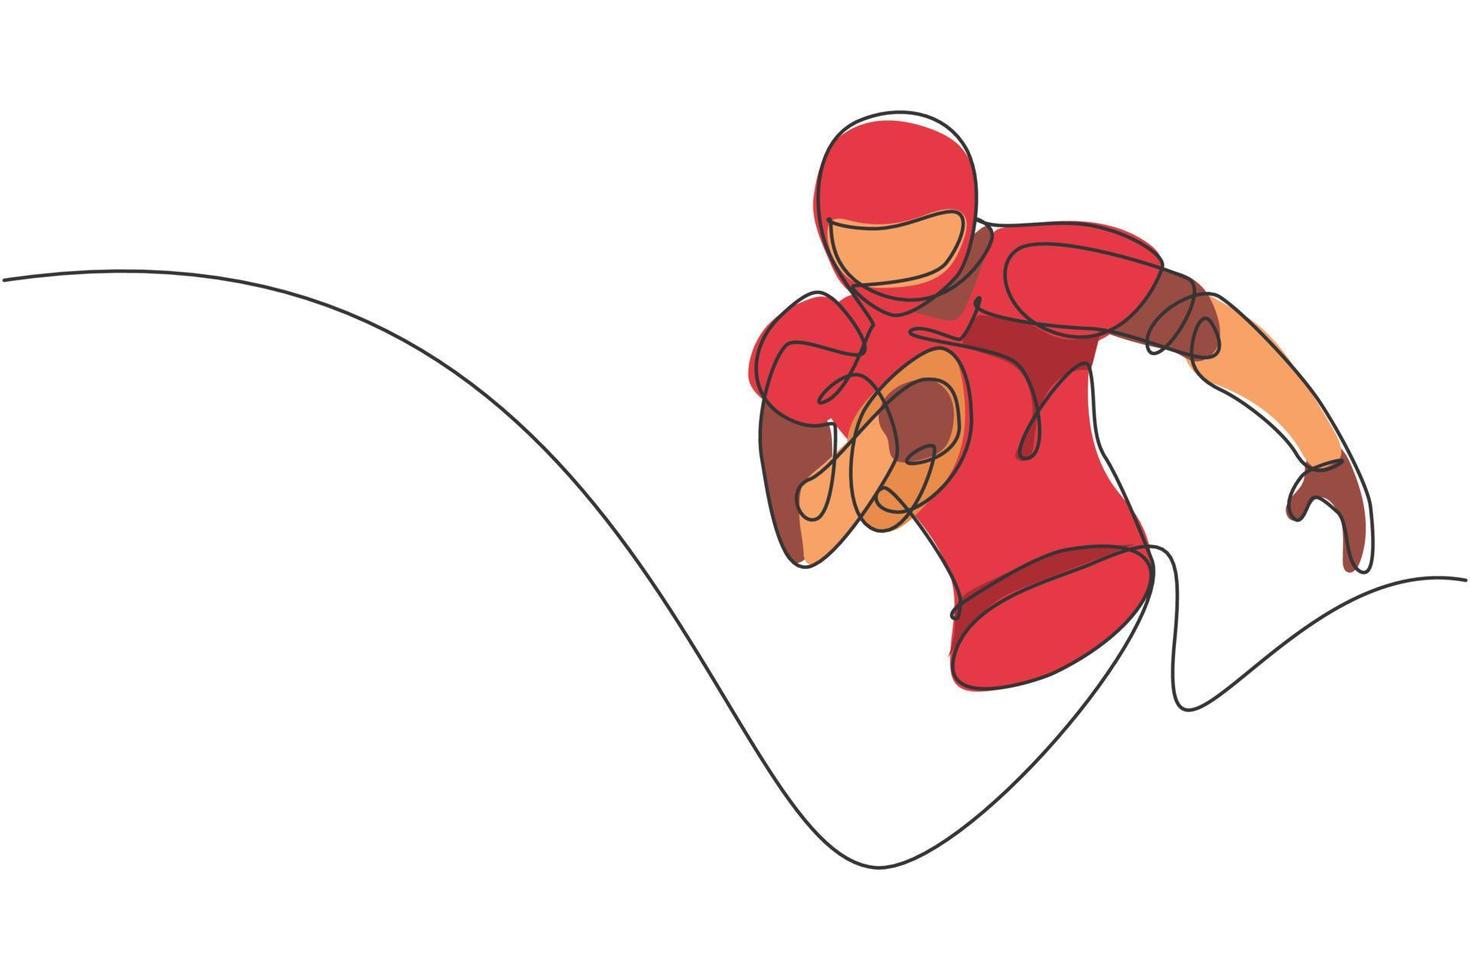 um único desenho de linha do jovem enérgico jogador de futebol americano correndo segure a bola para alcançar a linha de pontuação. conceito de competição esportiva. ilustração em vetor design de desenho de linha contínua moderna